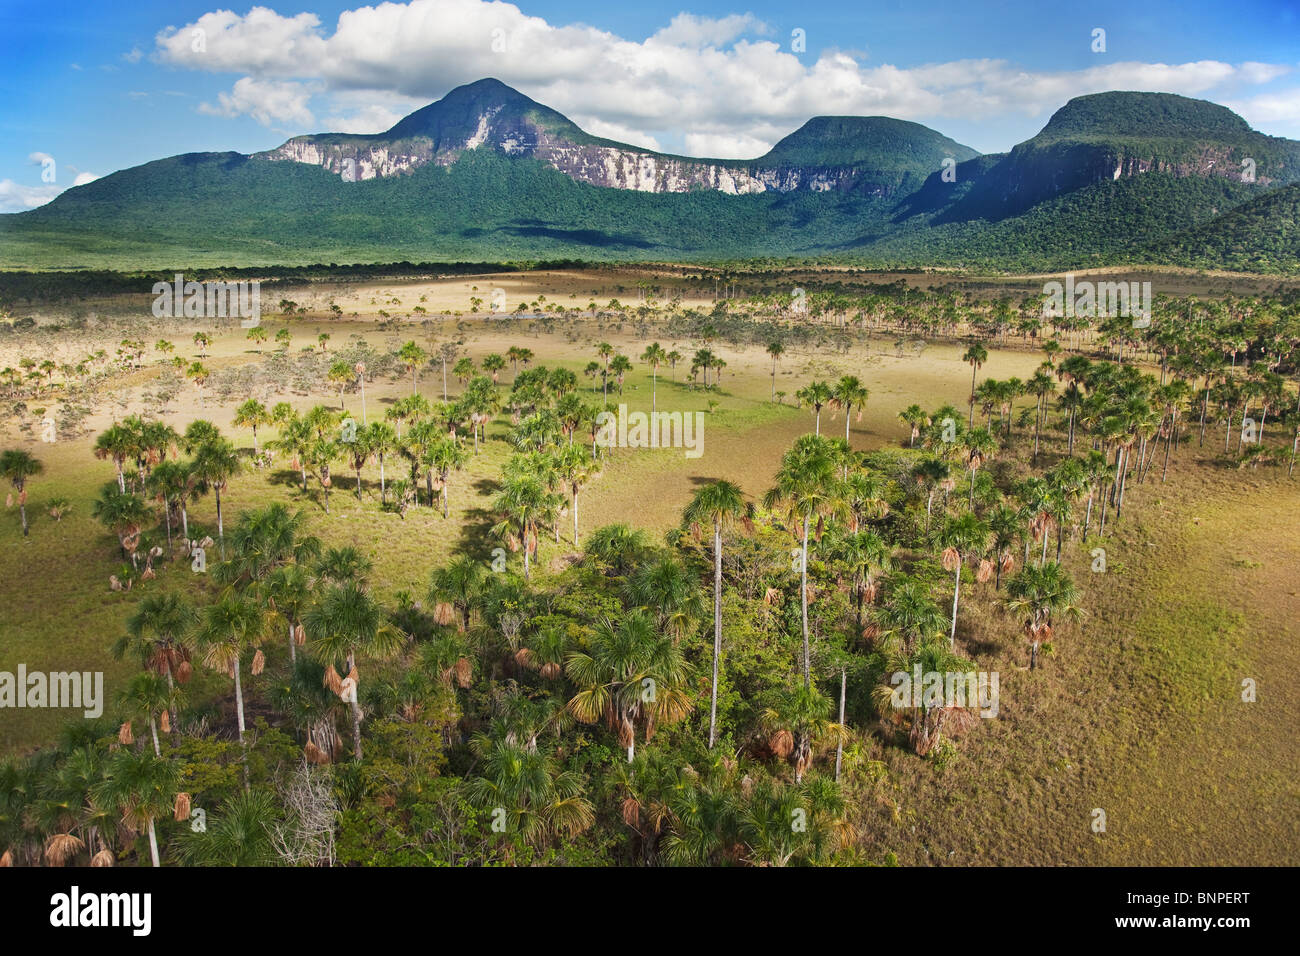 La Gran Sabana savane ou grand se trouve sur un plateau parsemé d'énormes montagnes de table appelé Tepuis Venezuela Amérique du Sud Banque D'Images